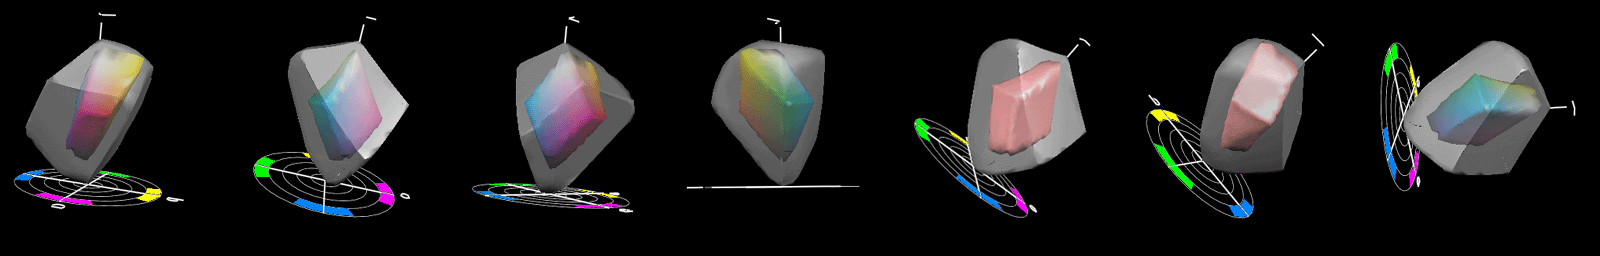 Comparaison 3D des gammes chromatiques Fogra 39 et ECI-RVB dans l'espace CIE Lab 2*